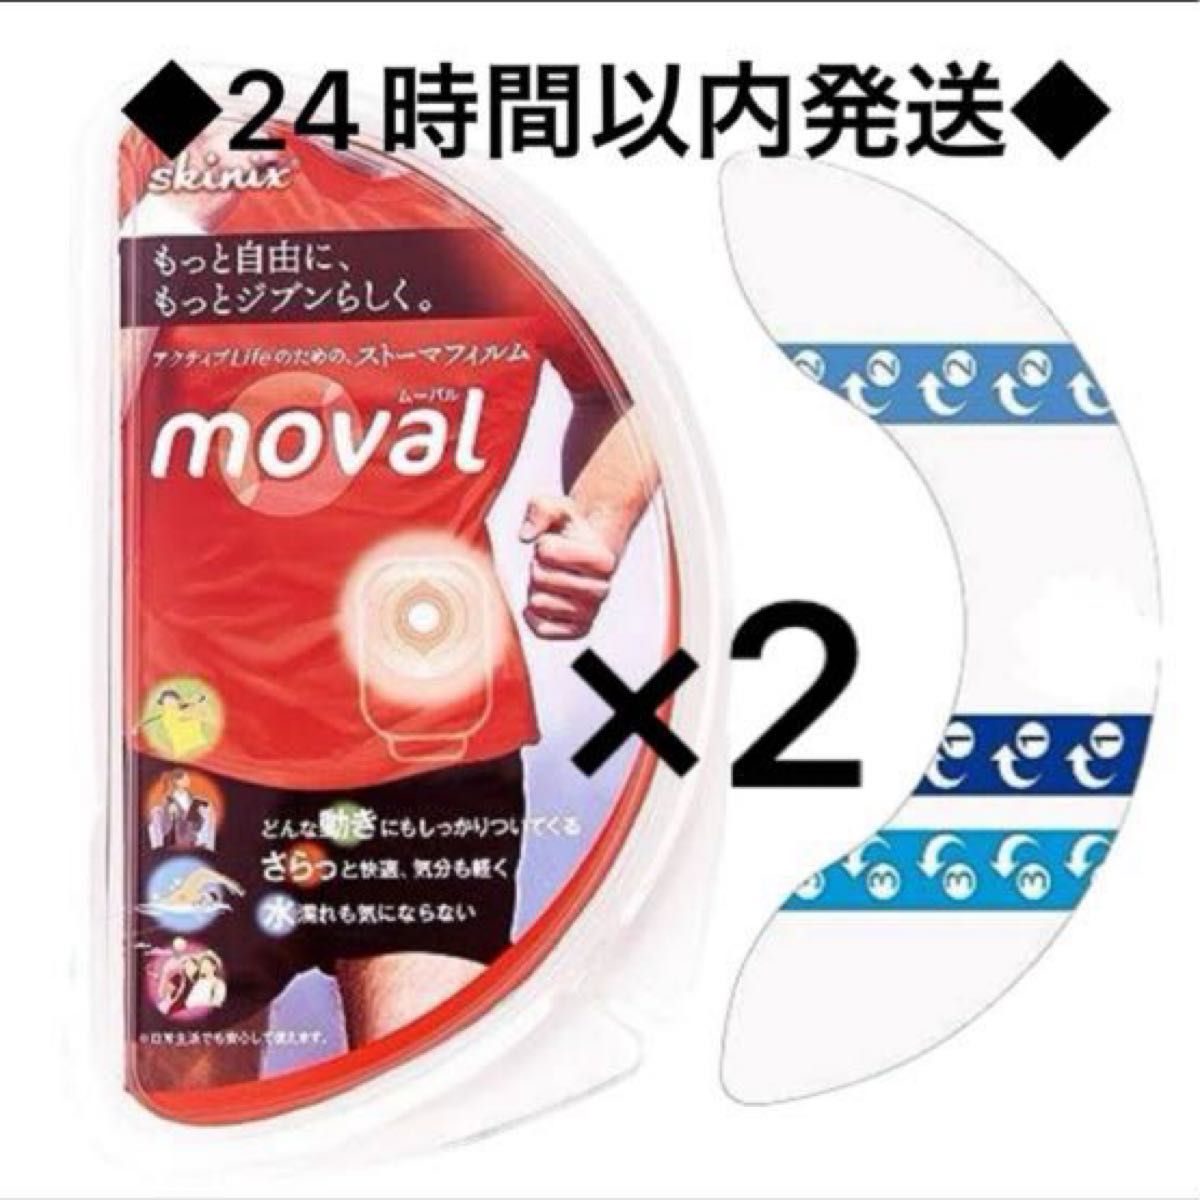 共和 ストーマ面板固定テープ moval ムーバル 20枚入 YB-R35160 (7-569-01) ×2個